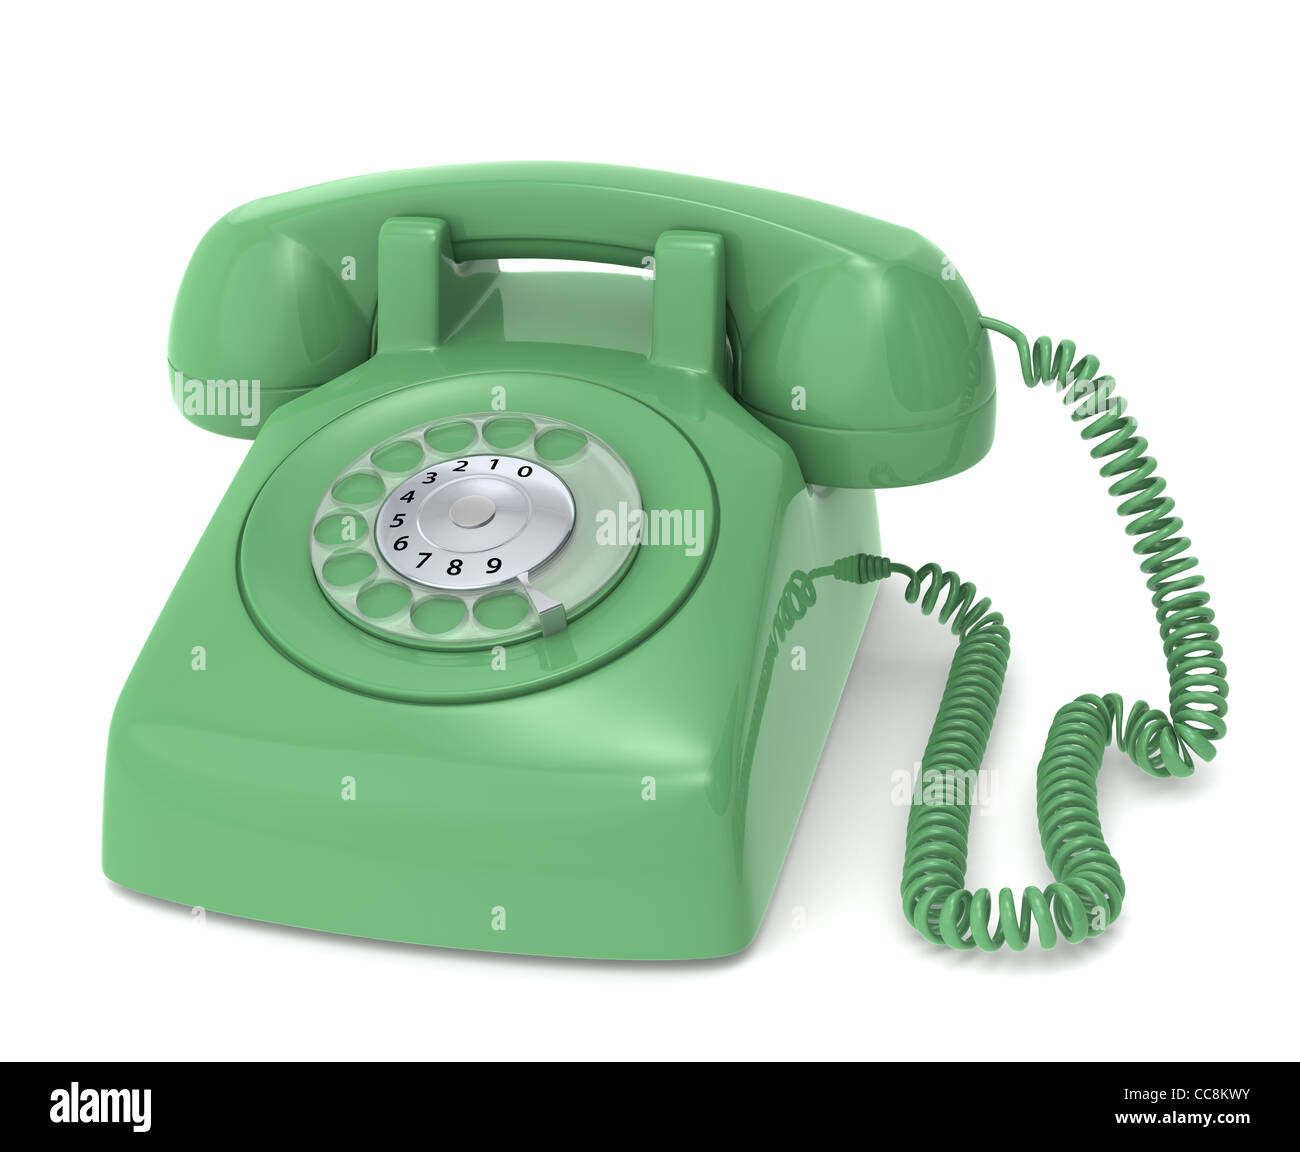 Зеленый телефон в вк. Зеленая коробка телефона. Telephone Green g 800. Зеленый телефон детский. Кнопочный телефон Greenscreen.